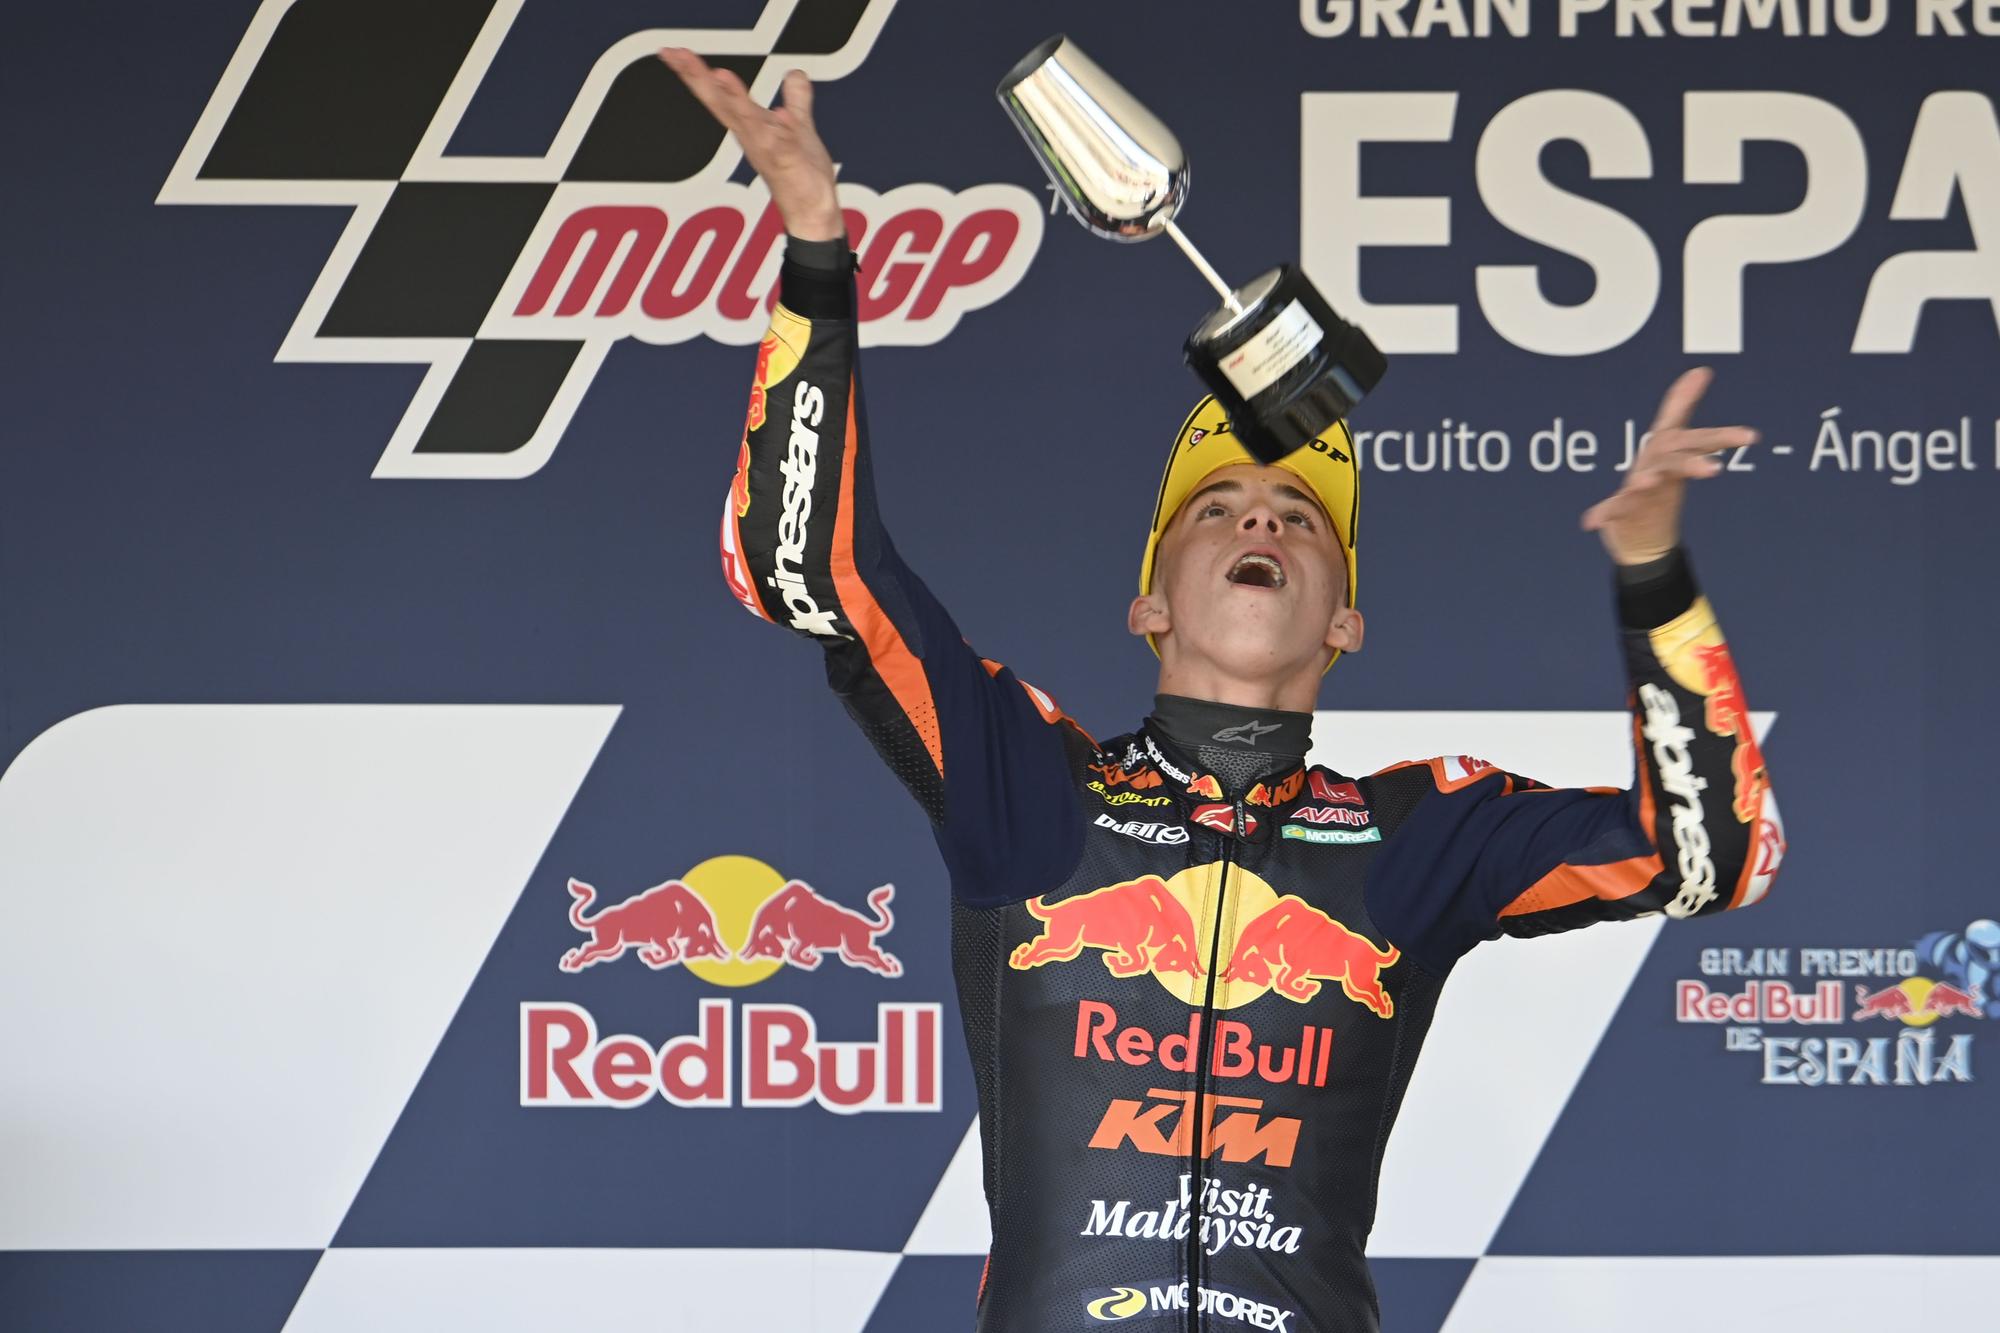 Pedro Acosta gana el Gran Premio de España